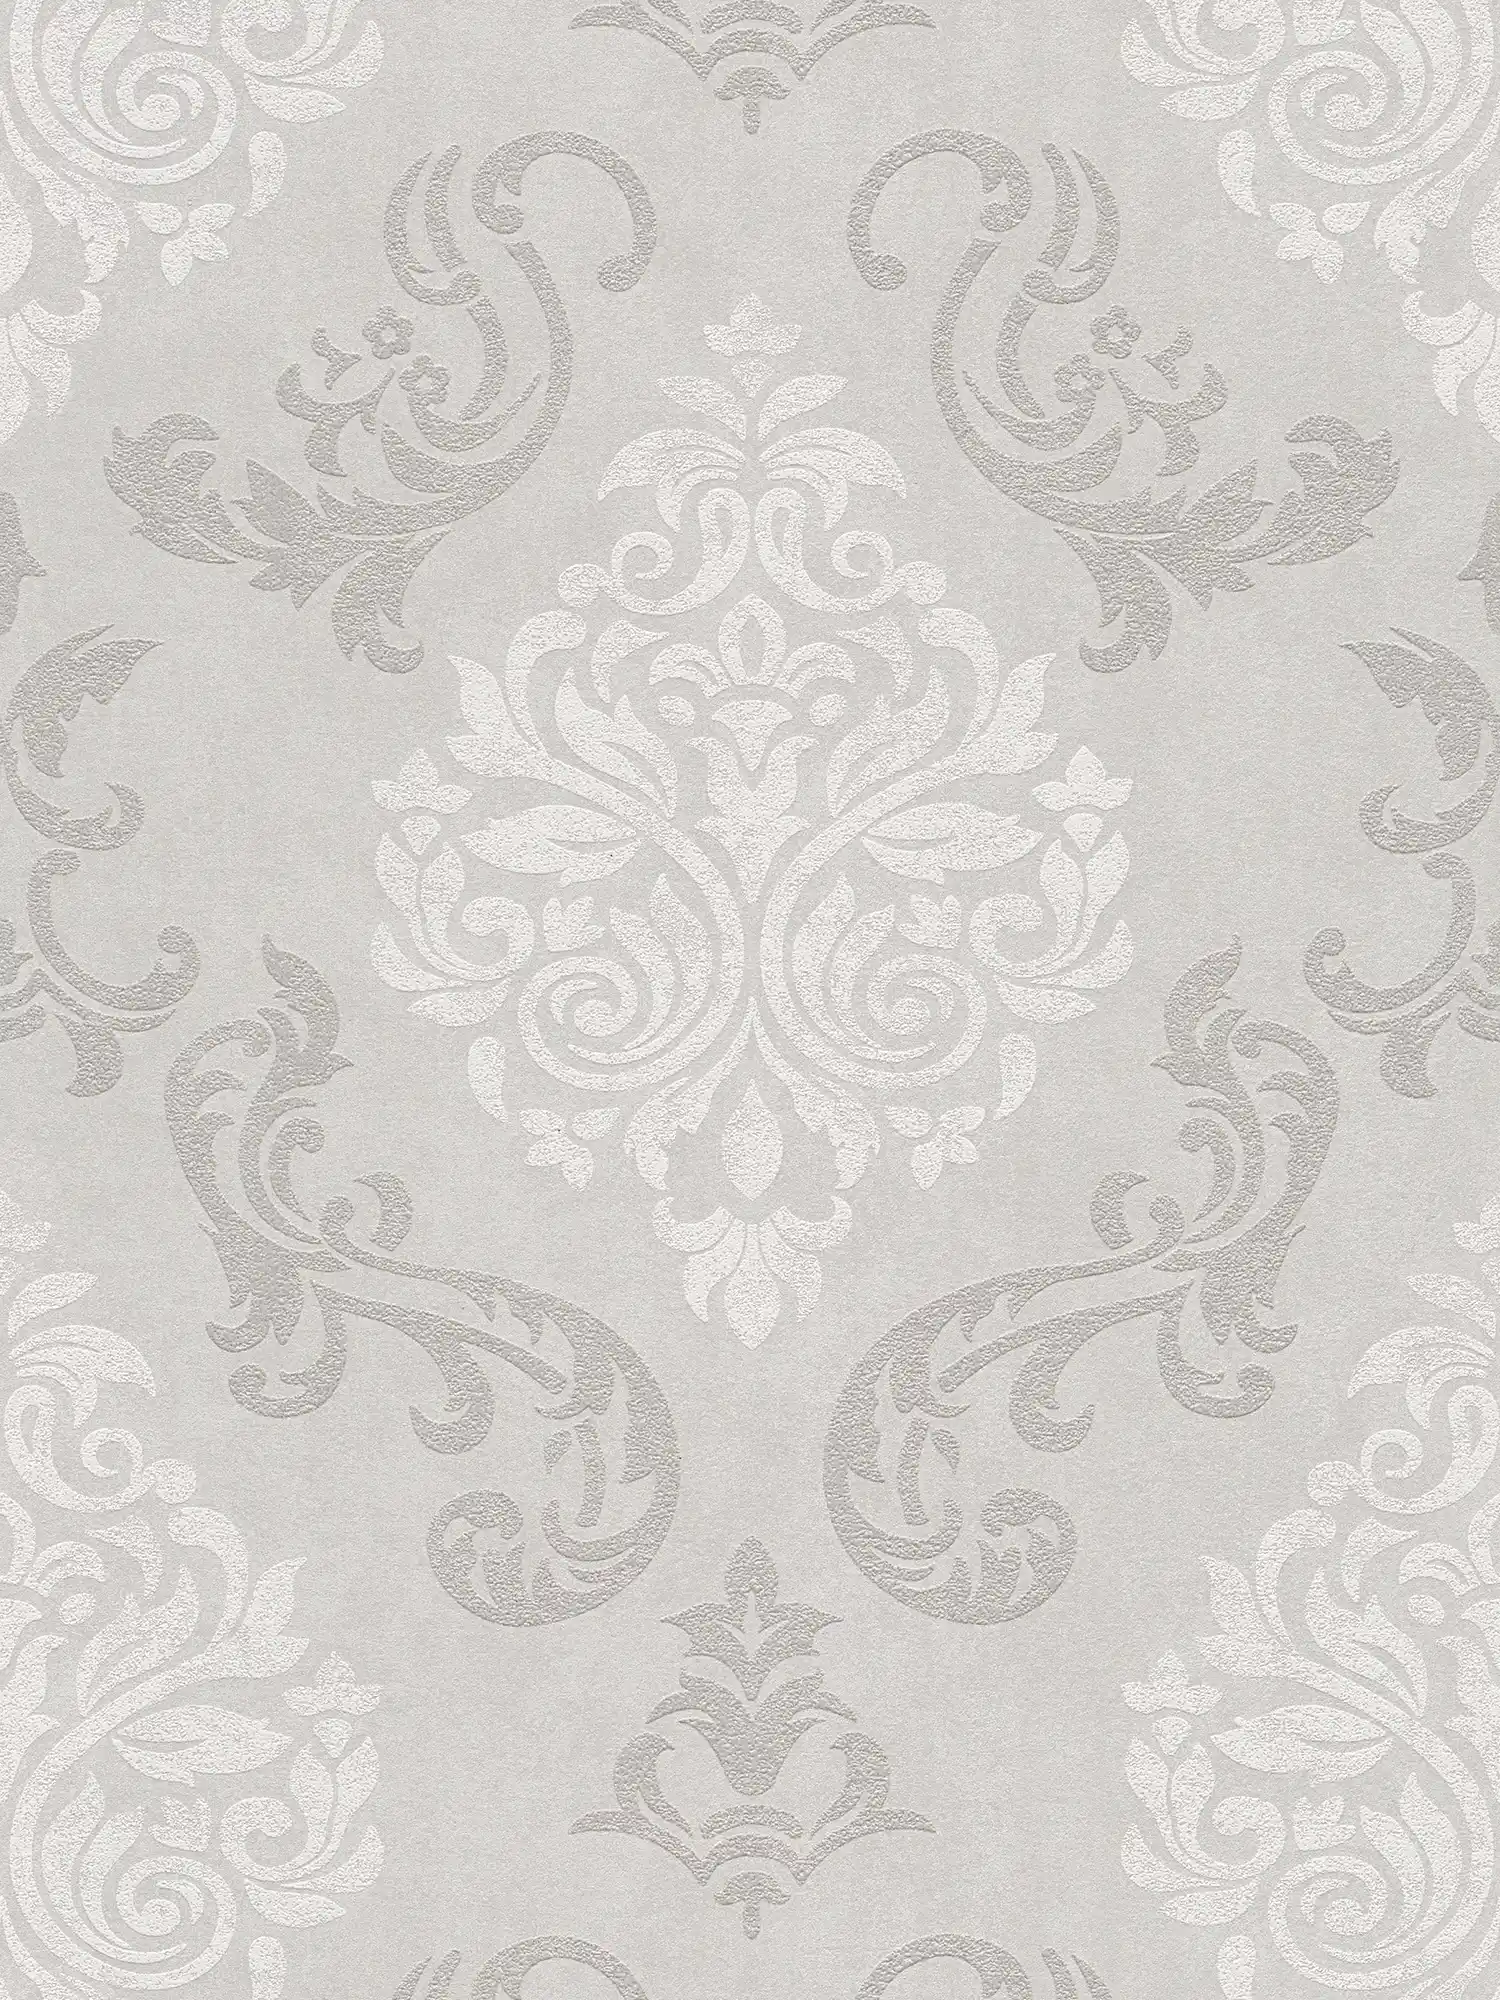 Ornements papier peint style baroque avec effet scintillant - beige, crème, métallique
